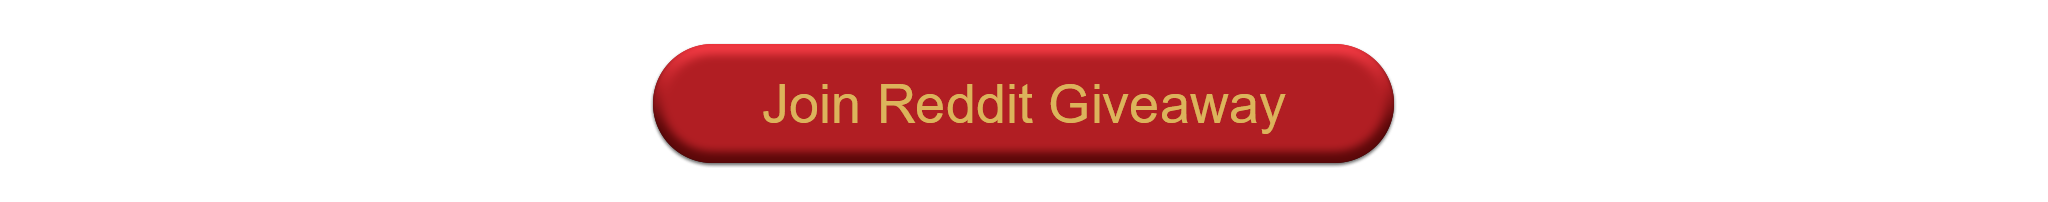 Join Reddit Giveaway